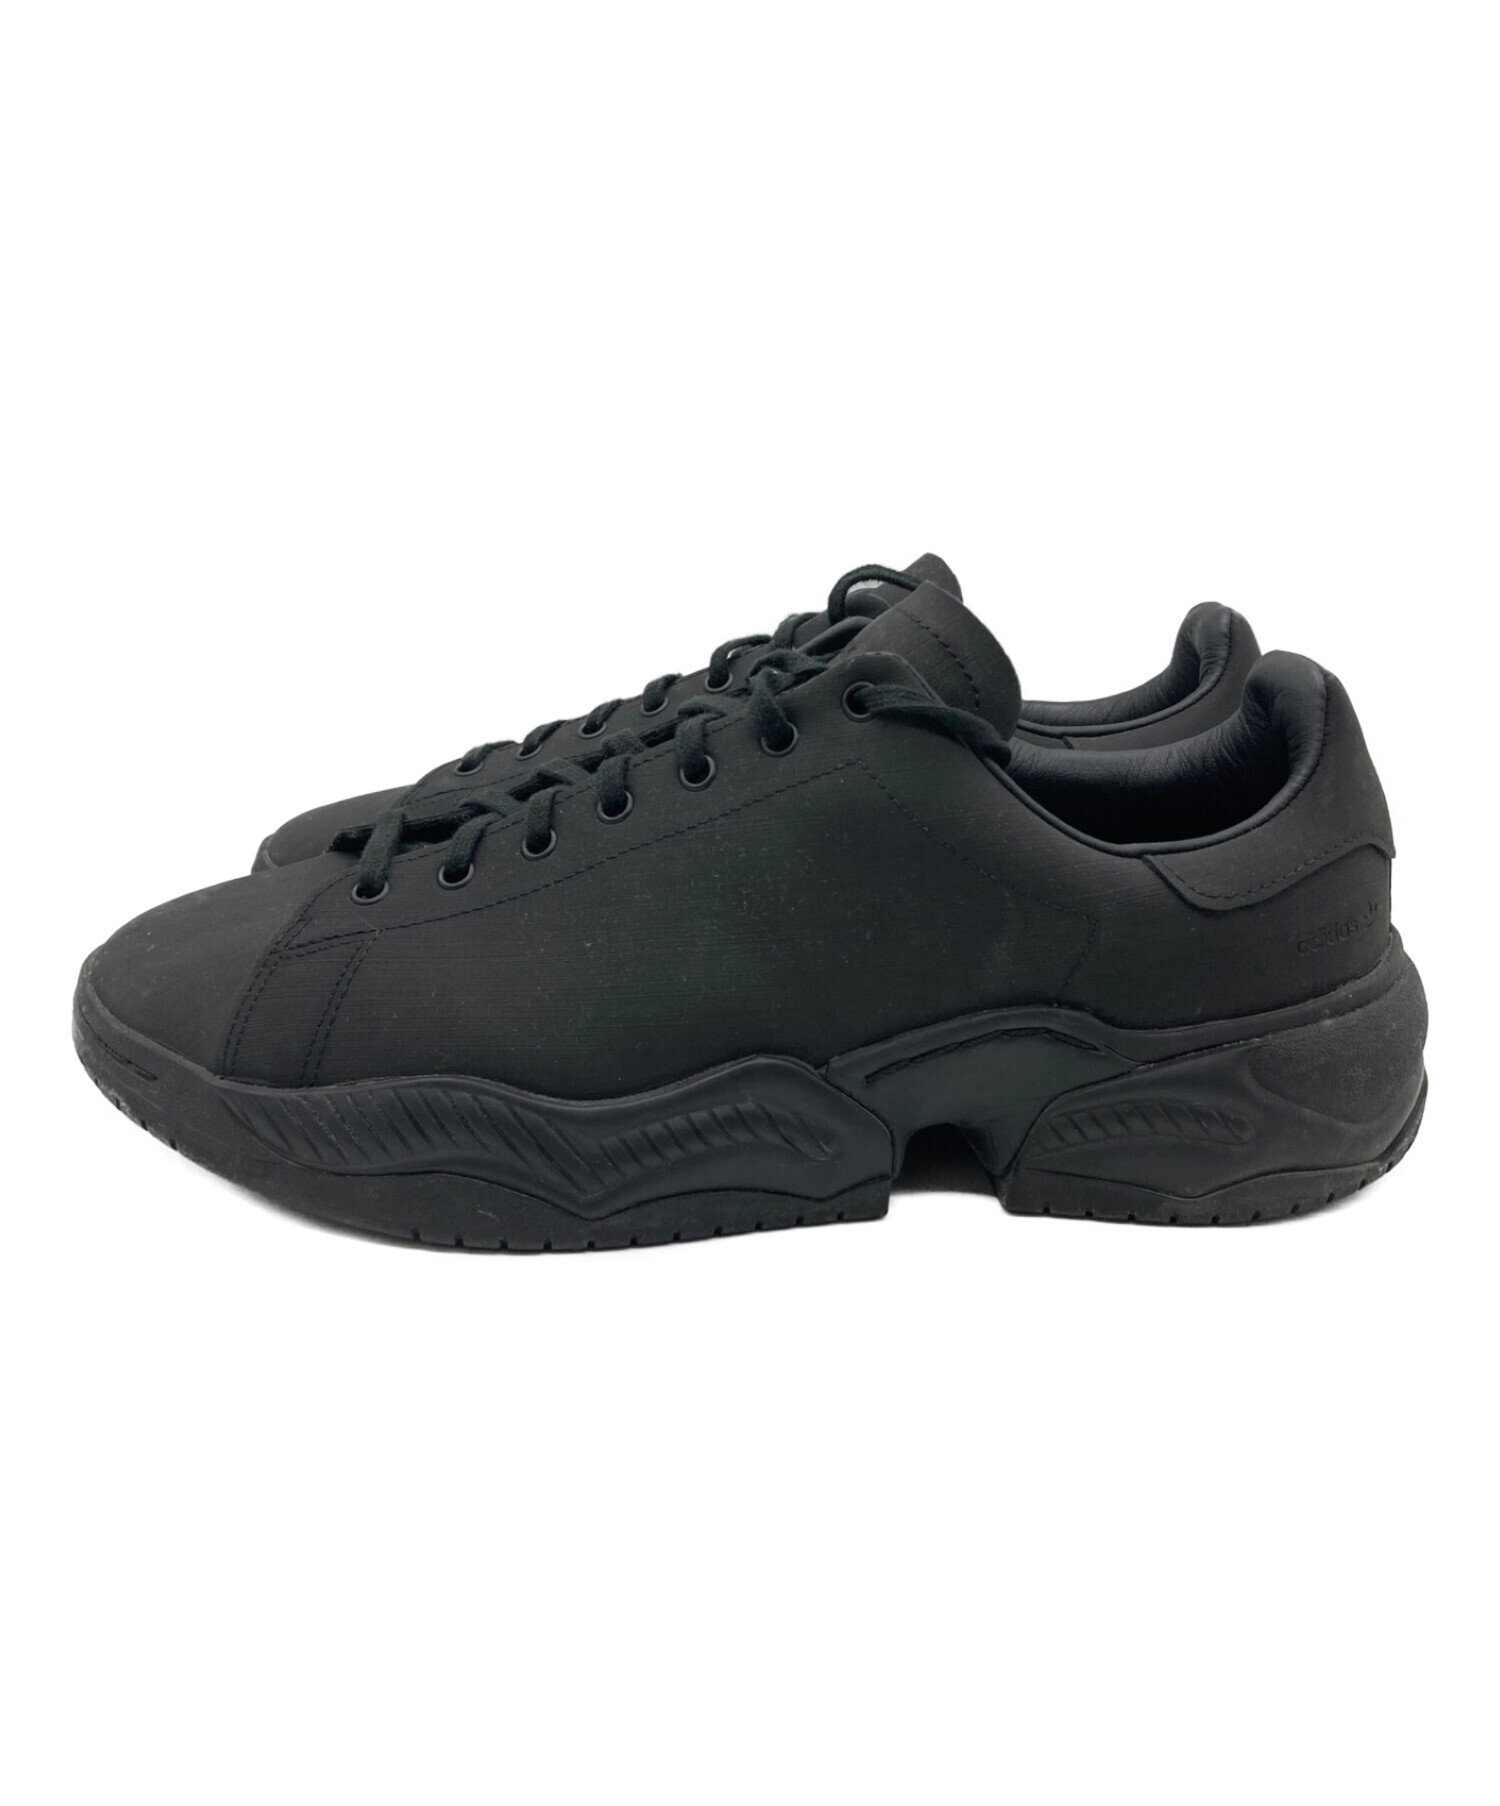 adidas (アディダス) OAMC (オーエーエムシー) TYPE O-2R ブラック サイズ:29.5